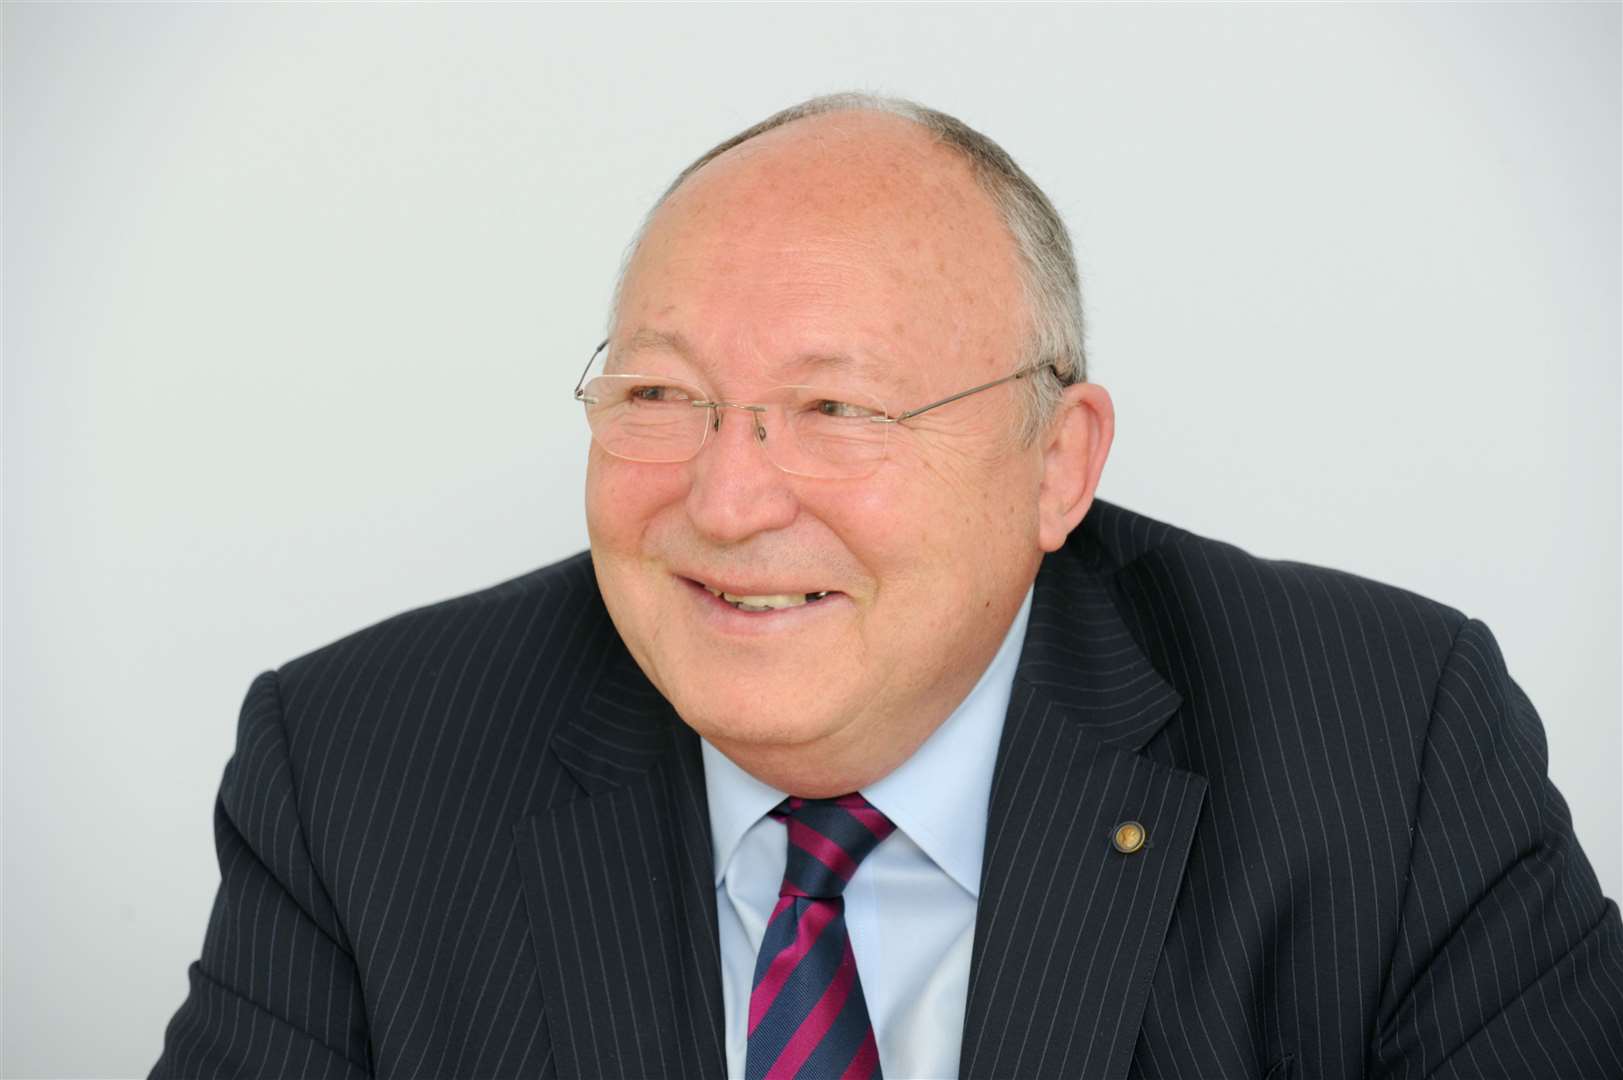 Former Gravesham council leader John Cubitt passed away in August 2017